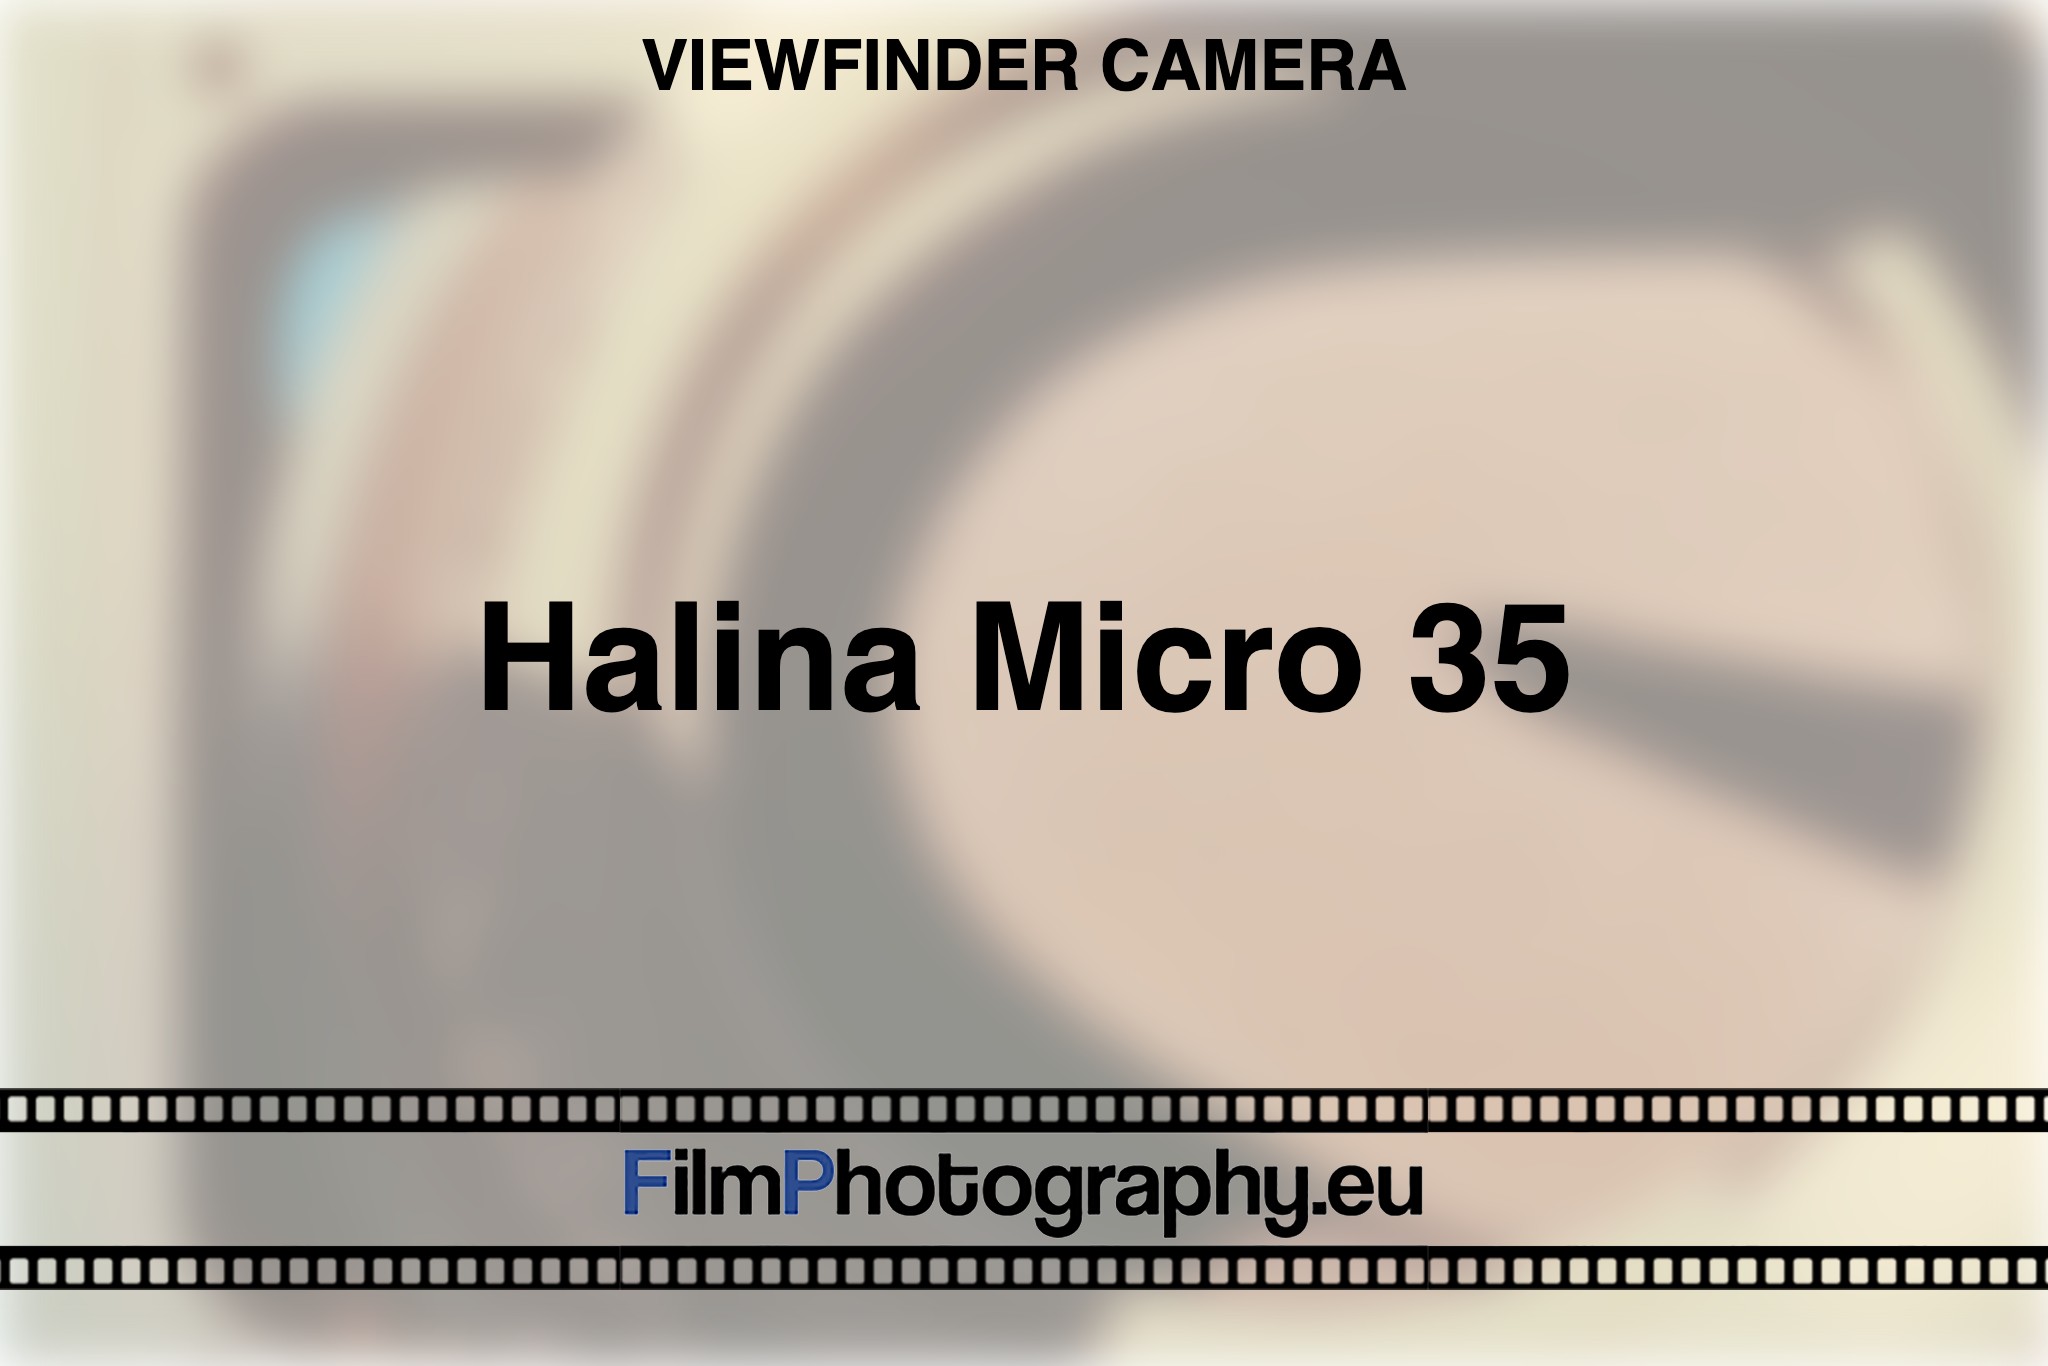 halina-micro-35-viewfinder-camera-bnv